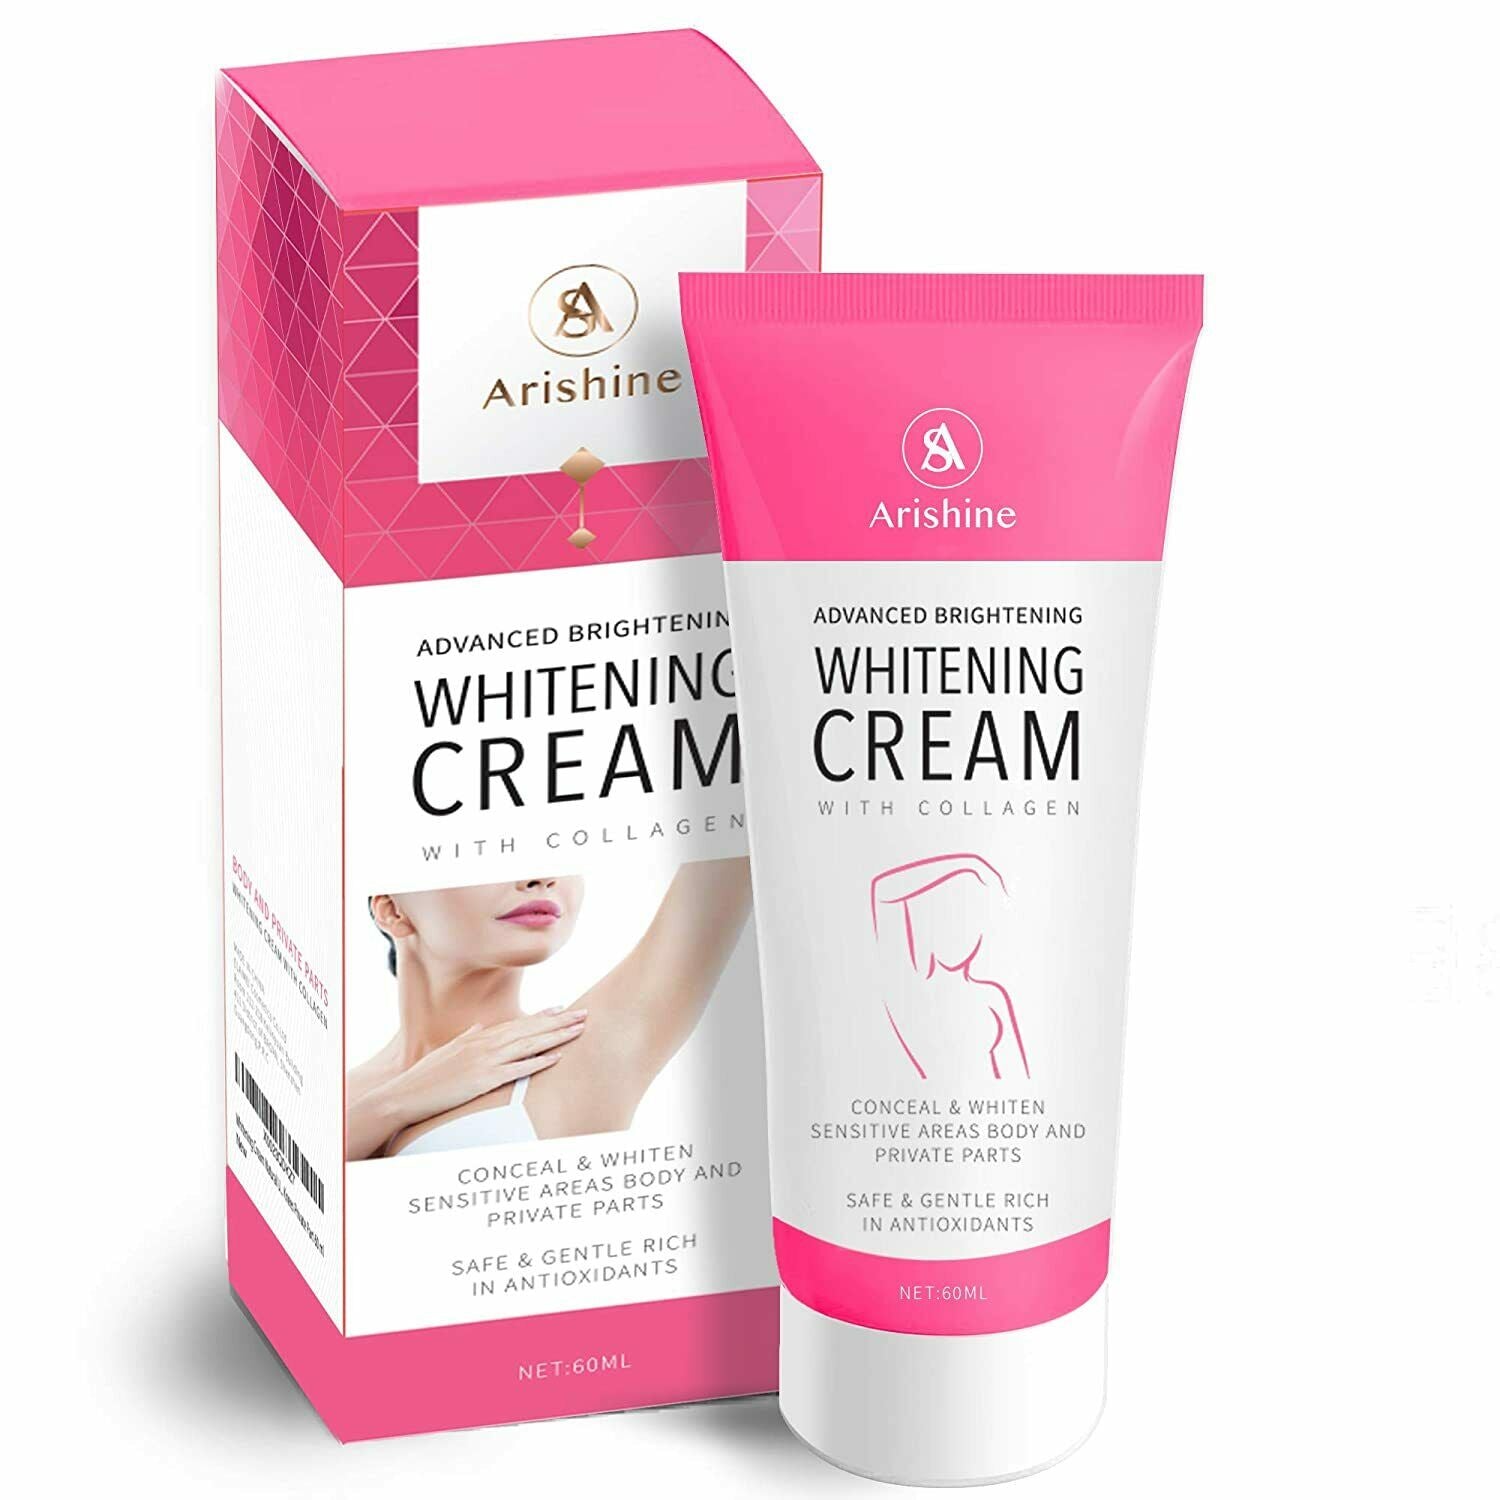 Arishine Advanced Brightening Whitening Cream with Collagen, 60ml (1.7 fl oz)